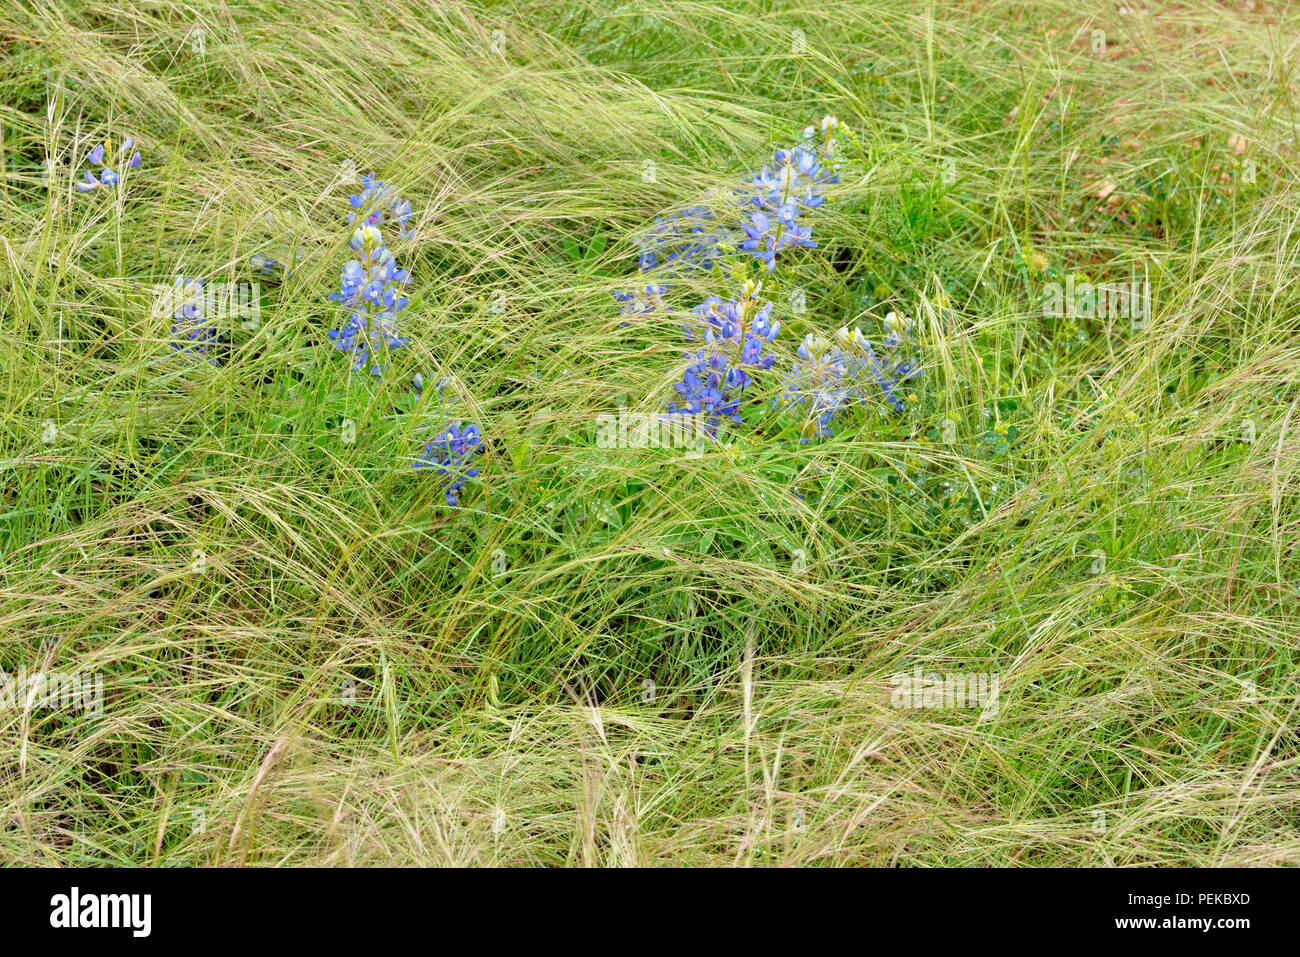 Texas bluebonnets and grass, Llano County CR 310, Texas, USA Stock Photo